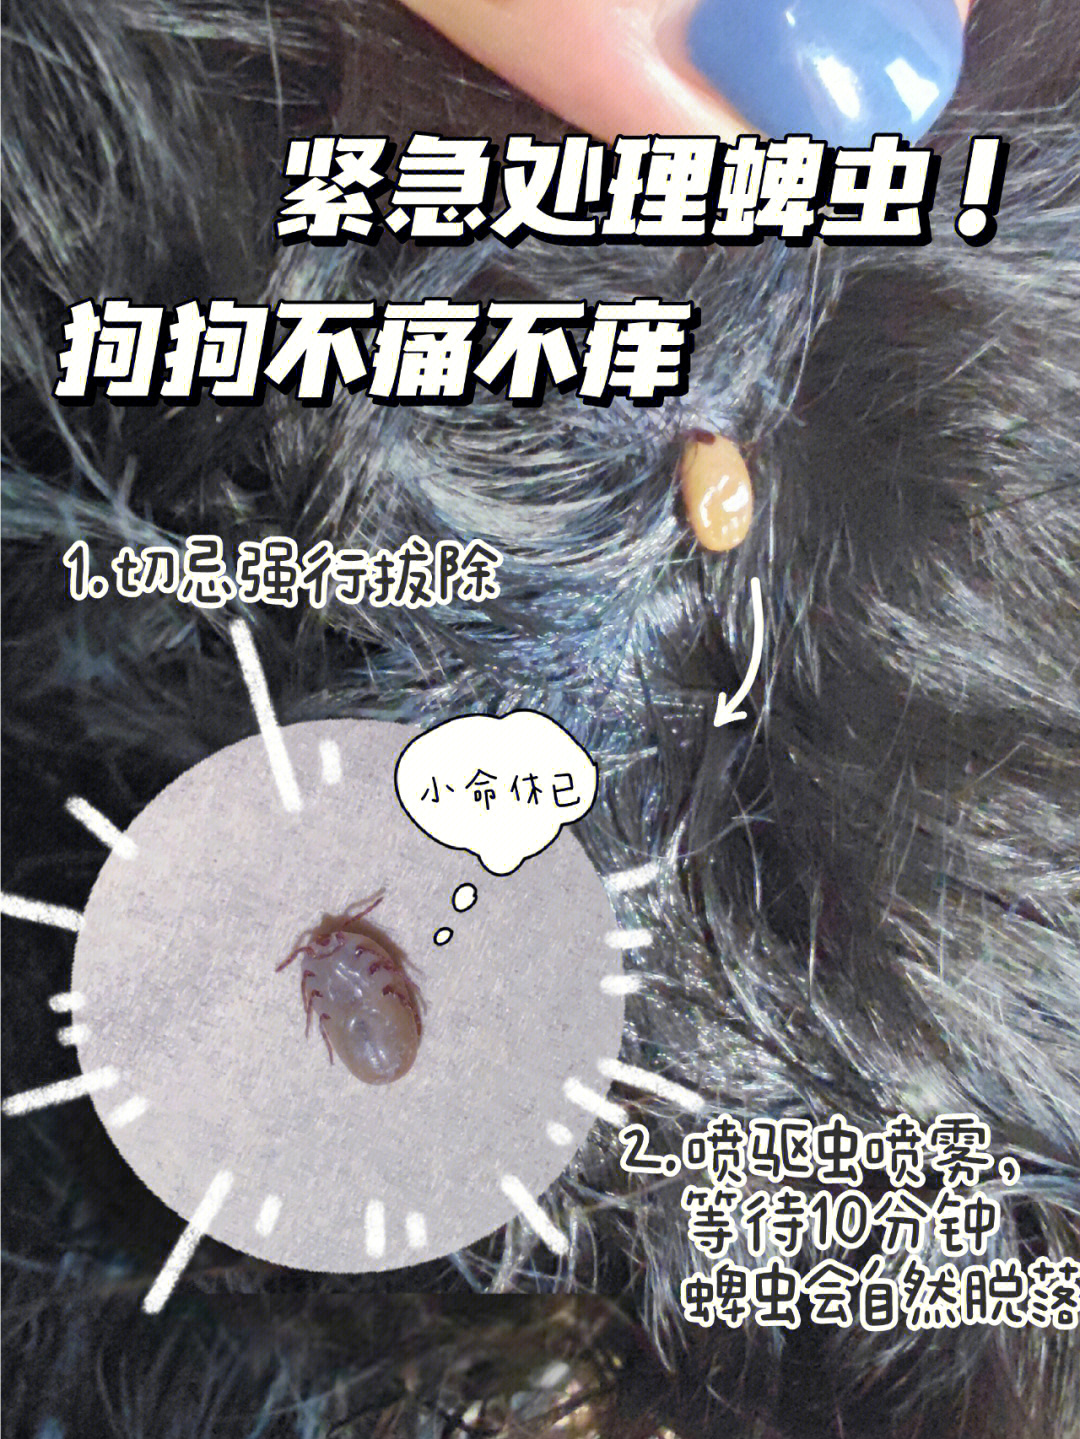 中国蜱虫分布图图片